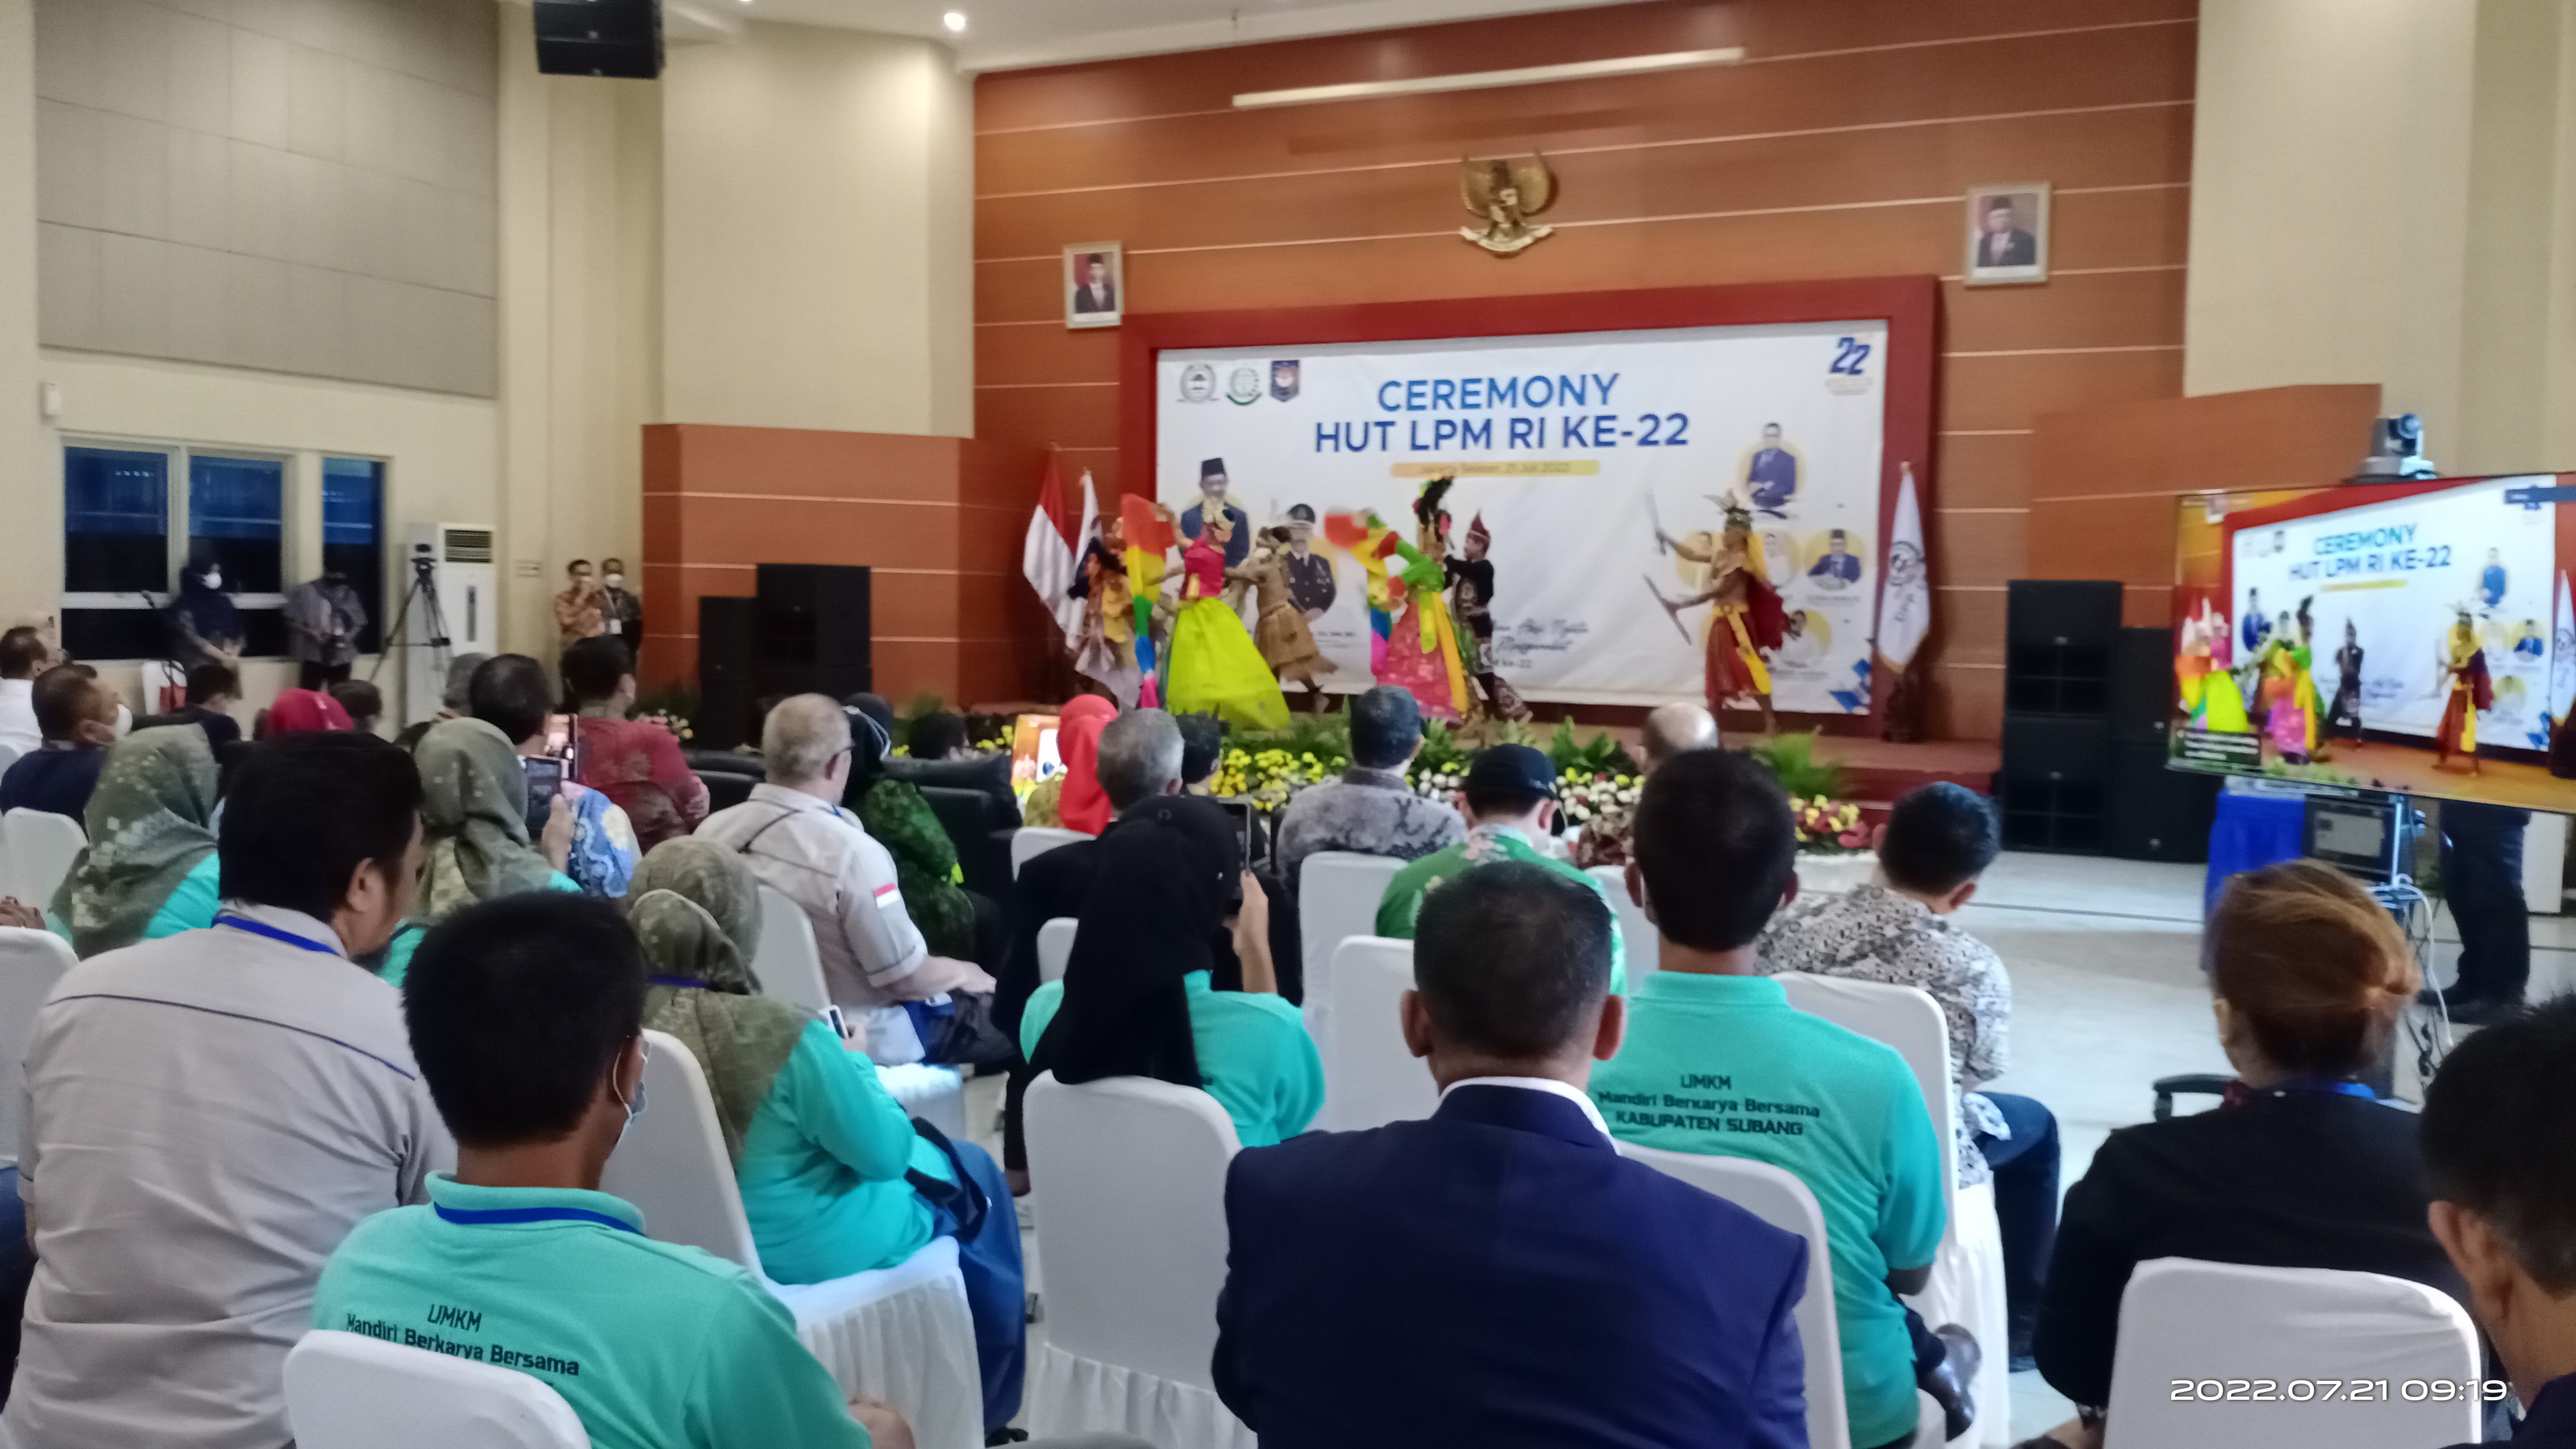 Tarian Nusantara Buka Acara Ceremony HUT LPM RI ke-22